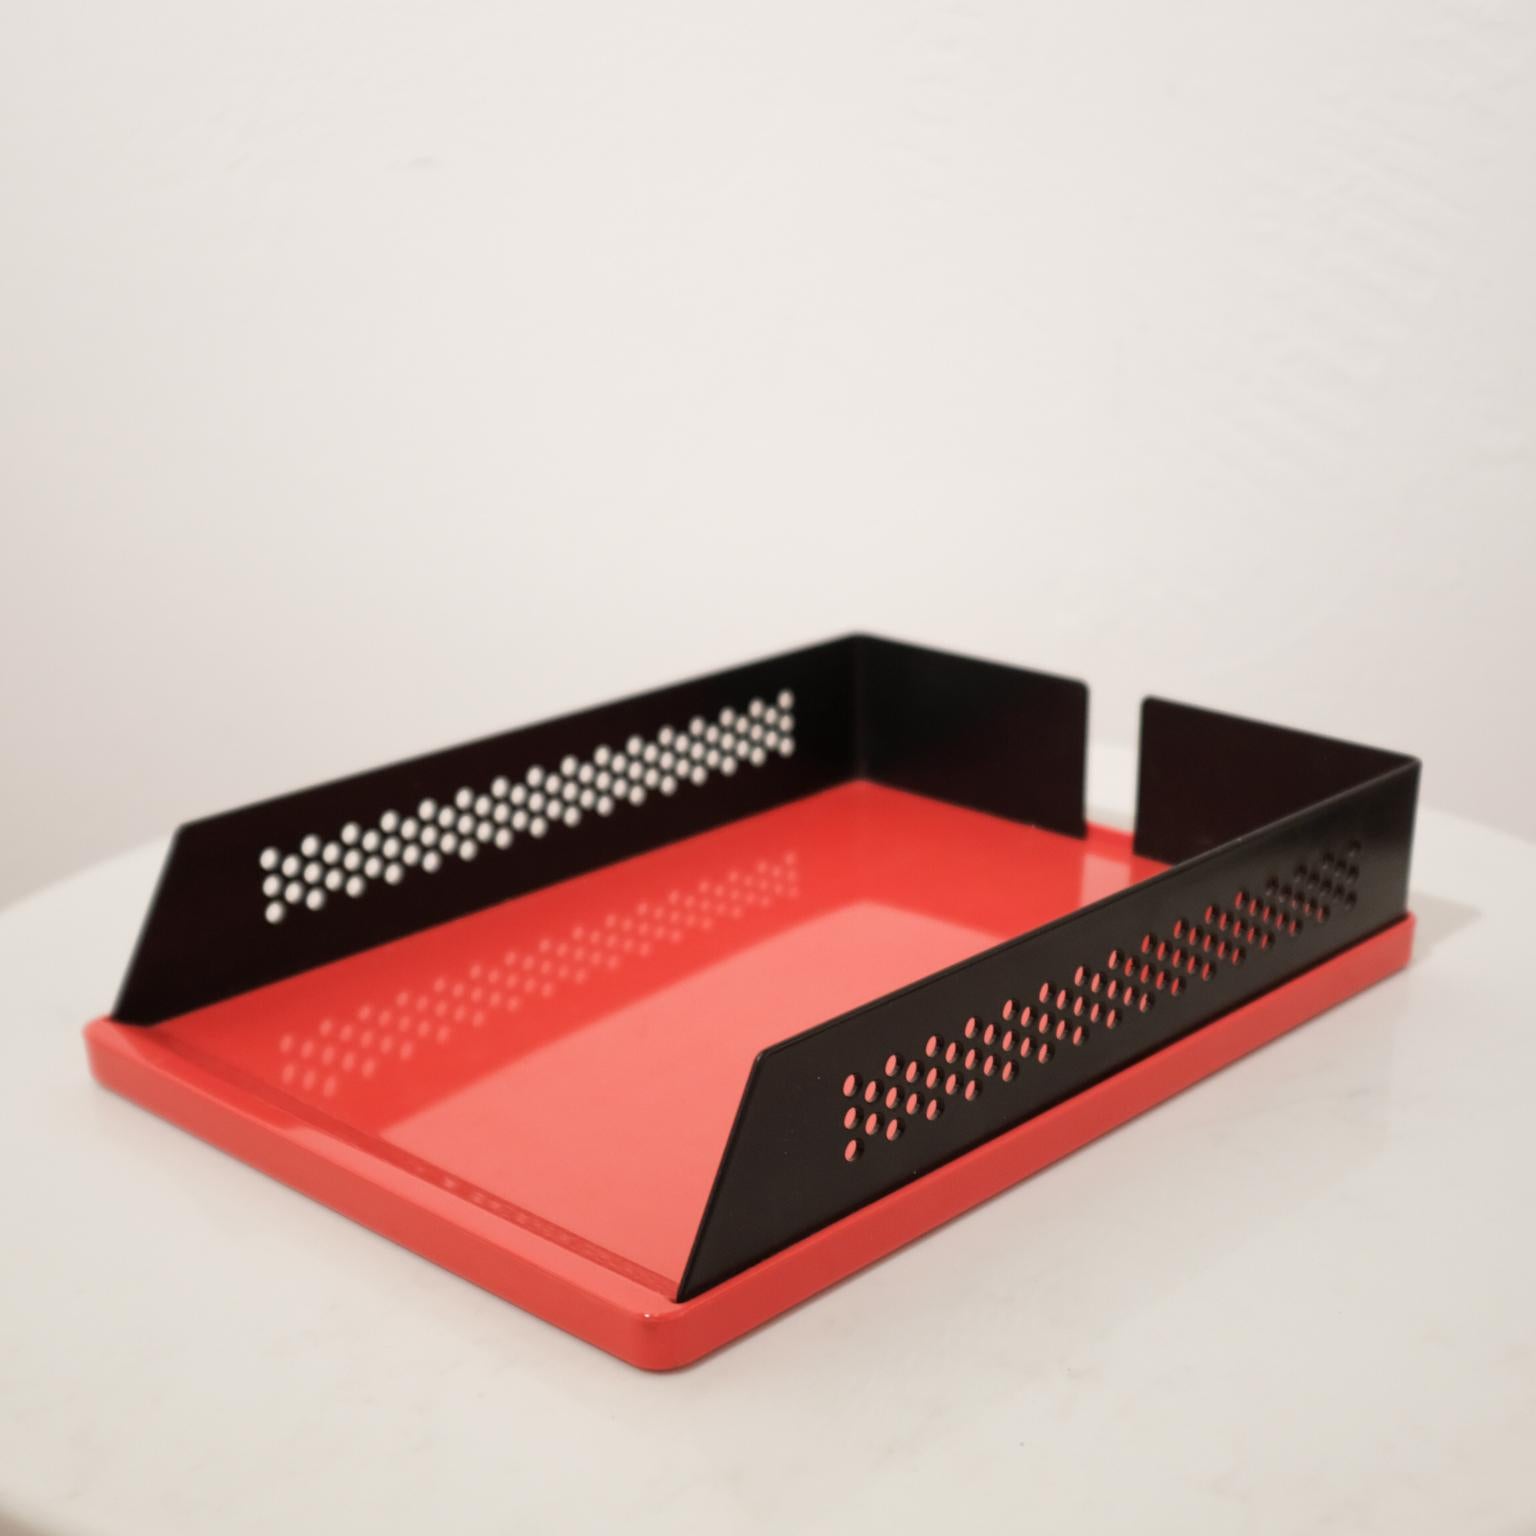 Postmodern Italian Desk Set Wastepaper Basket, 1980s (Ende des 20. Jahrhunderts)